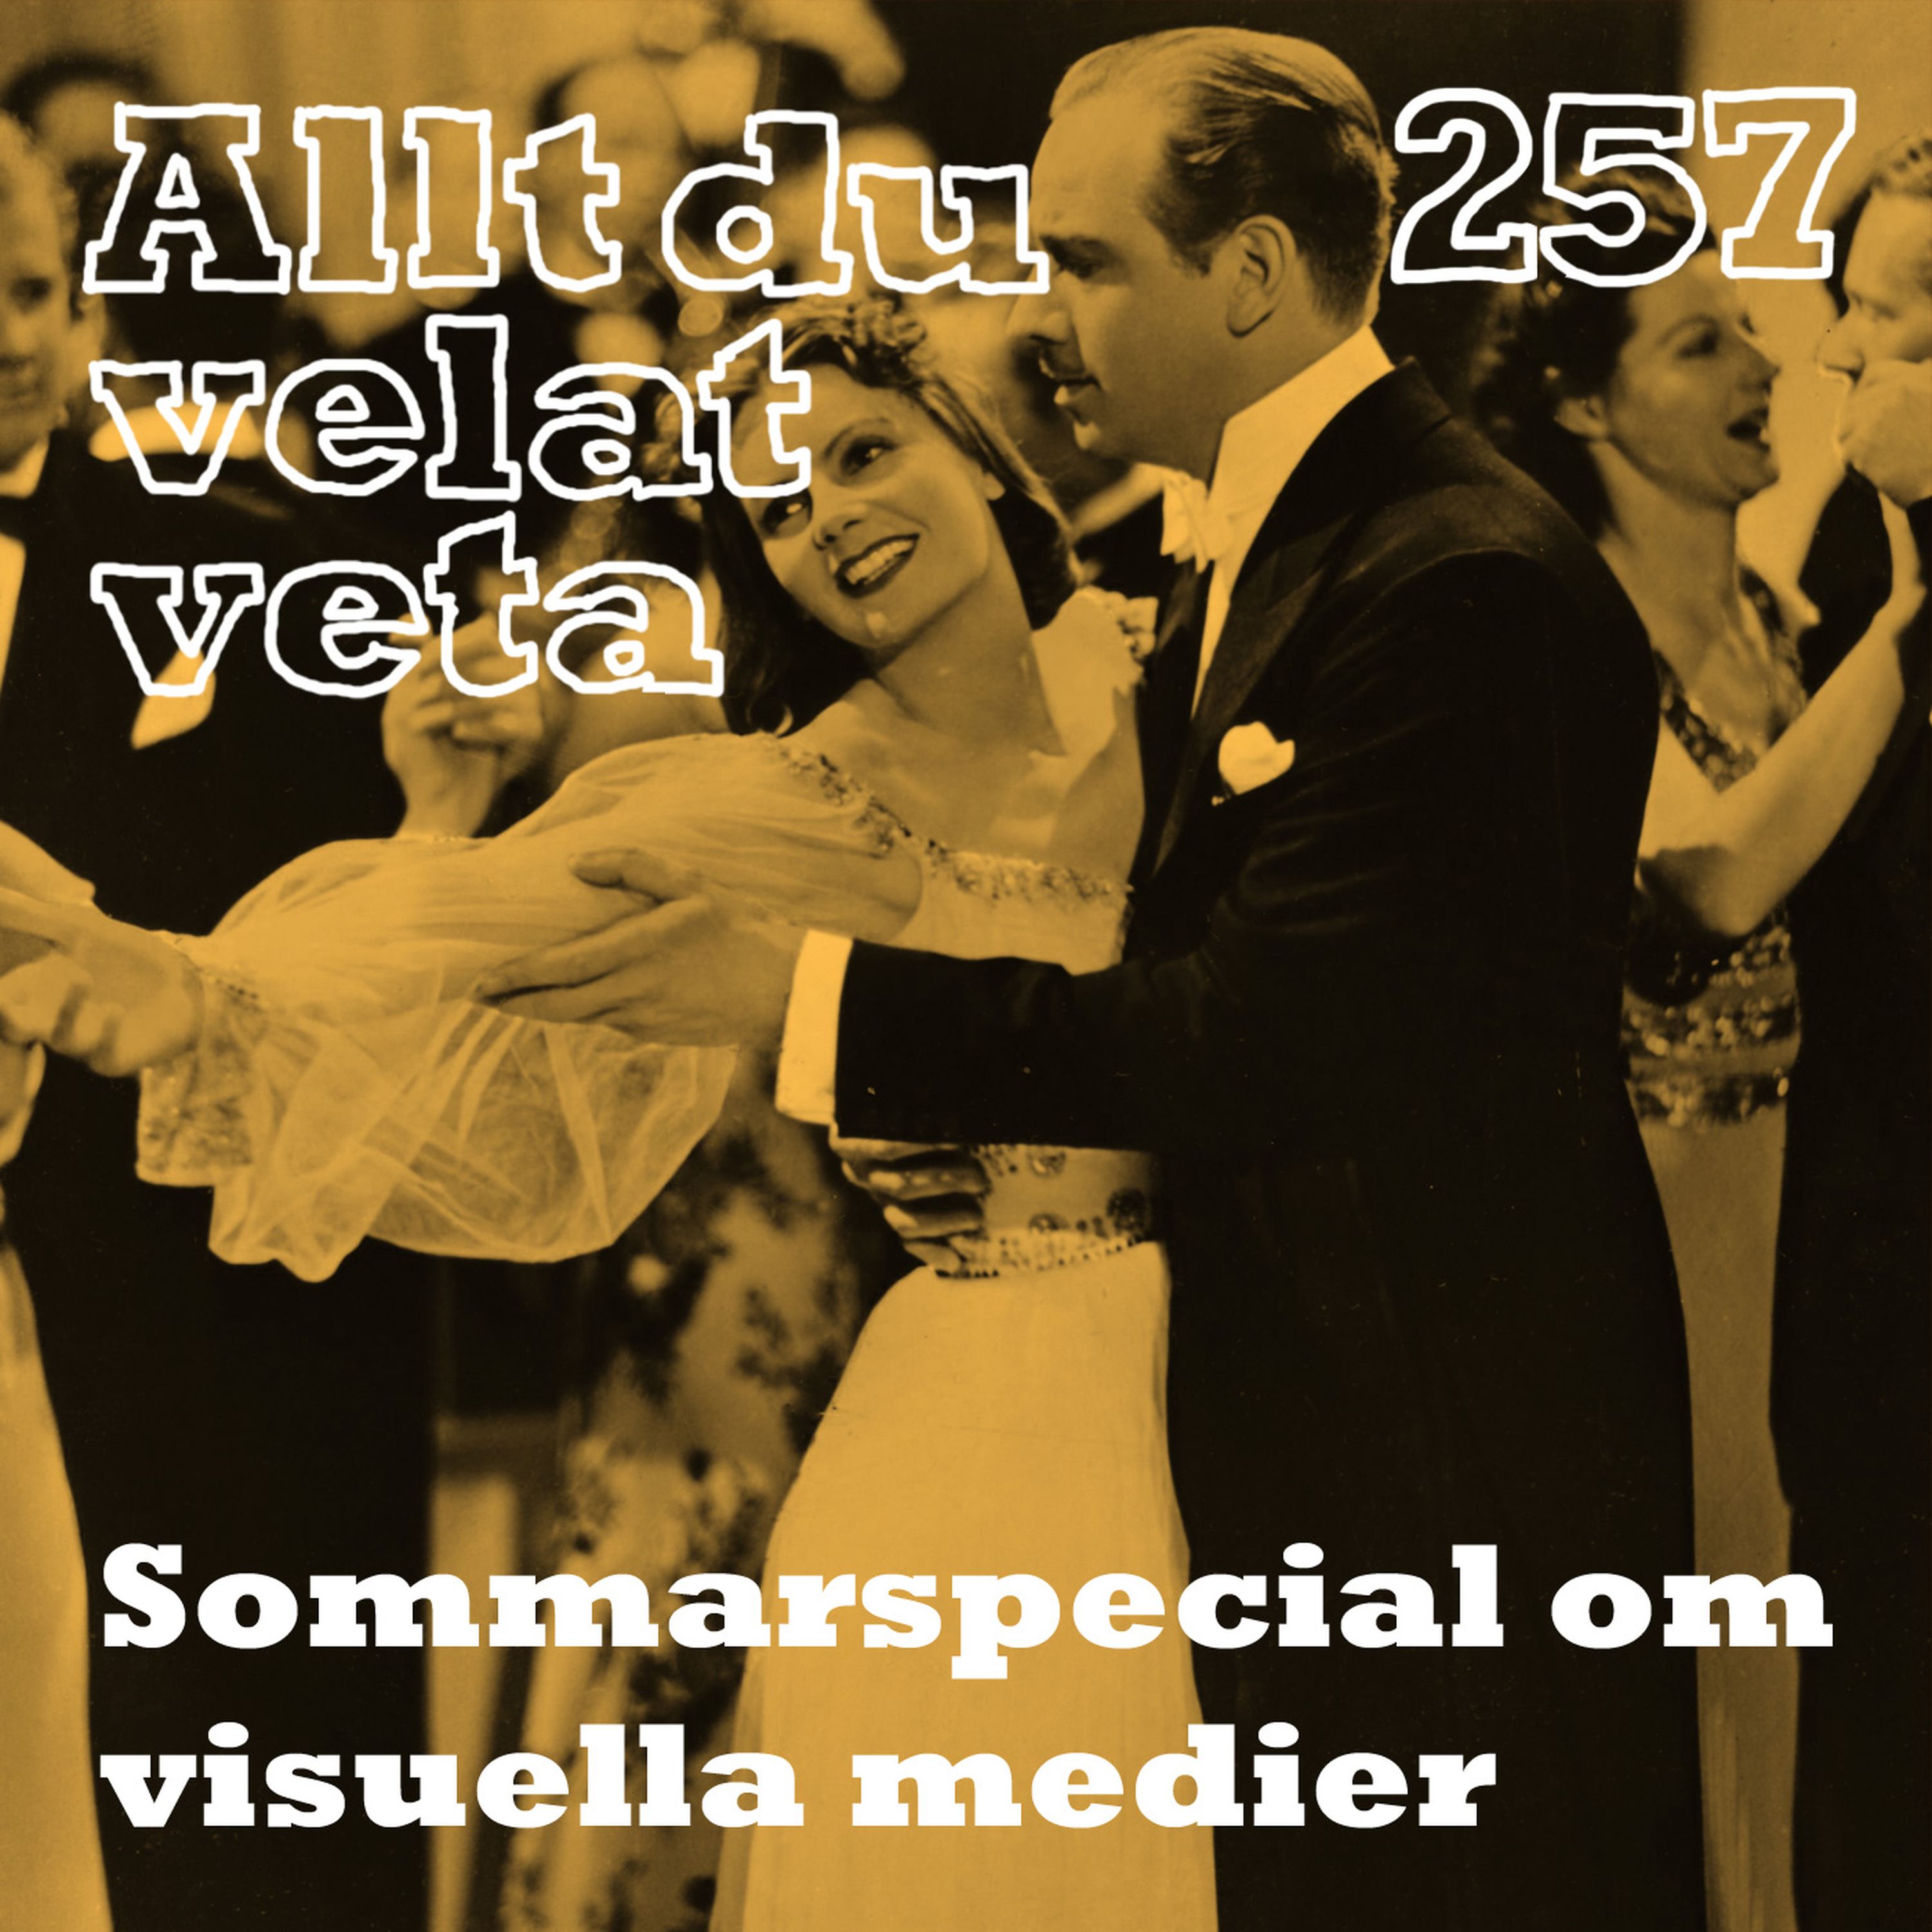 257 Sommarspecial om visuella medier